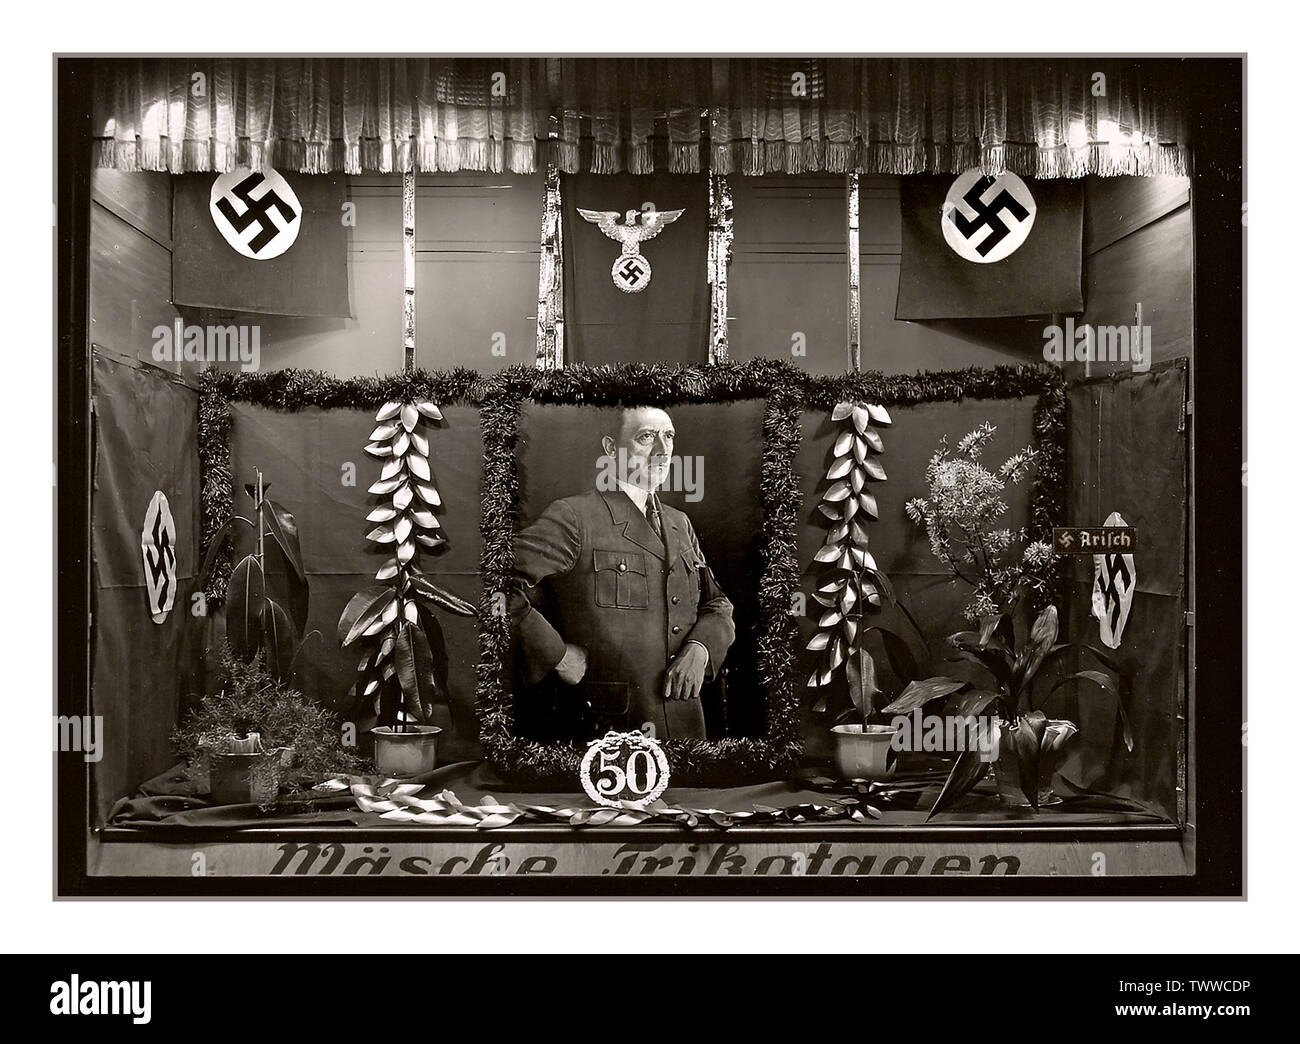 Jahrgang 1939 Adolf Hitler Schaufenster Anzeige seinen 50. Geburtstag feiert am 18. April 1939 hat die Regierung der Bundesrepublik Deutschland erklärt, dass ihre Führer Adolf Hitlers Geburtstag (20 April) war ein nationaler Feiertag. Feierlichkeiten fand in allen Gemeinden im ganzen Land. Stockfoto